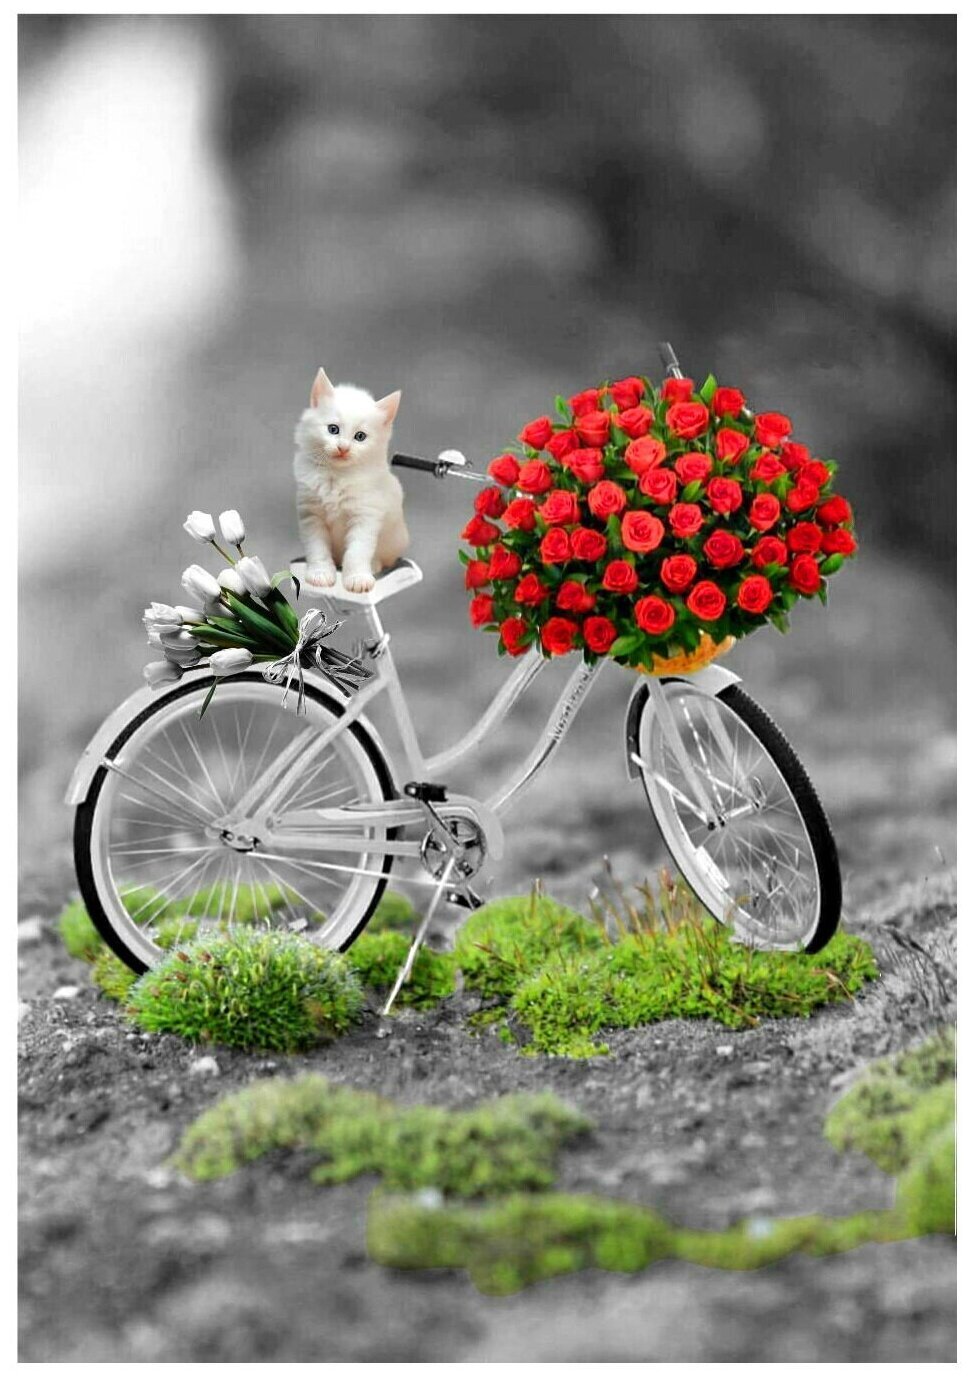 Открытки хорошего оригинального дня. Яркого дня и хорошего настроения. Велосипед с цветами. Хорошего дня и настроения. Открытки с позитивом хорошего настроения.